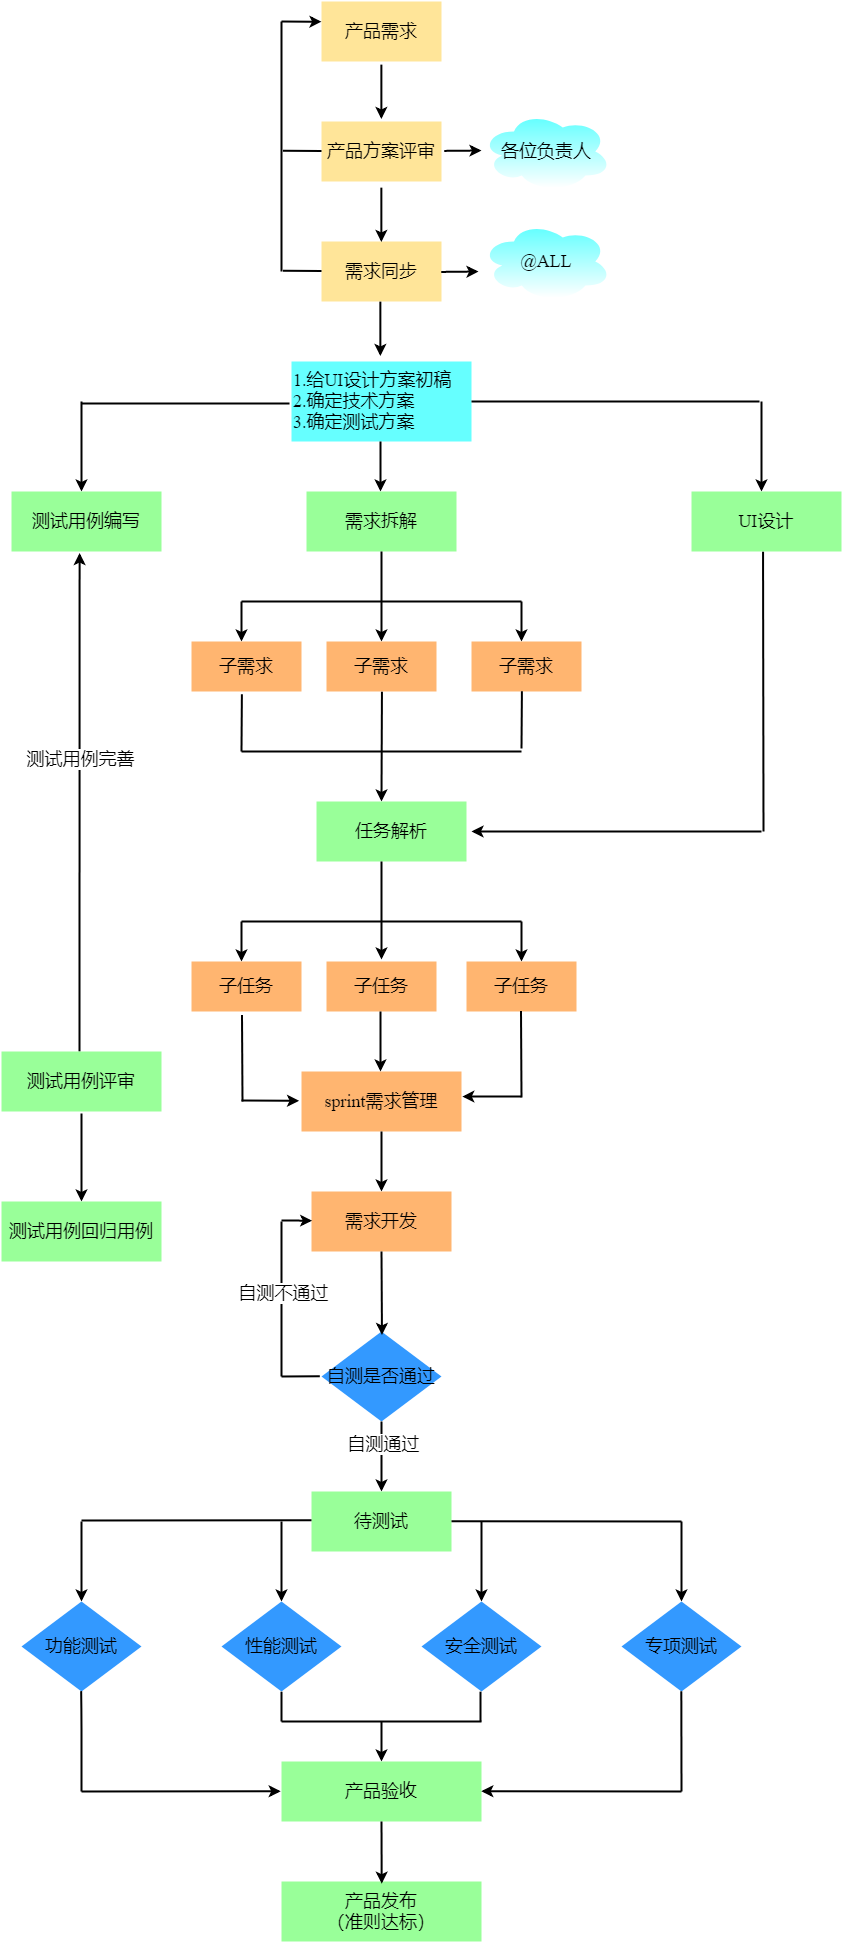 Web开发技术架构图